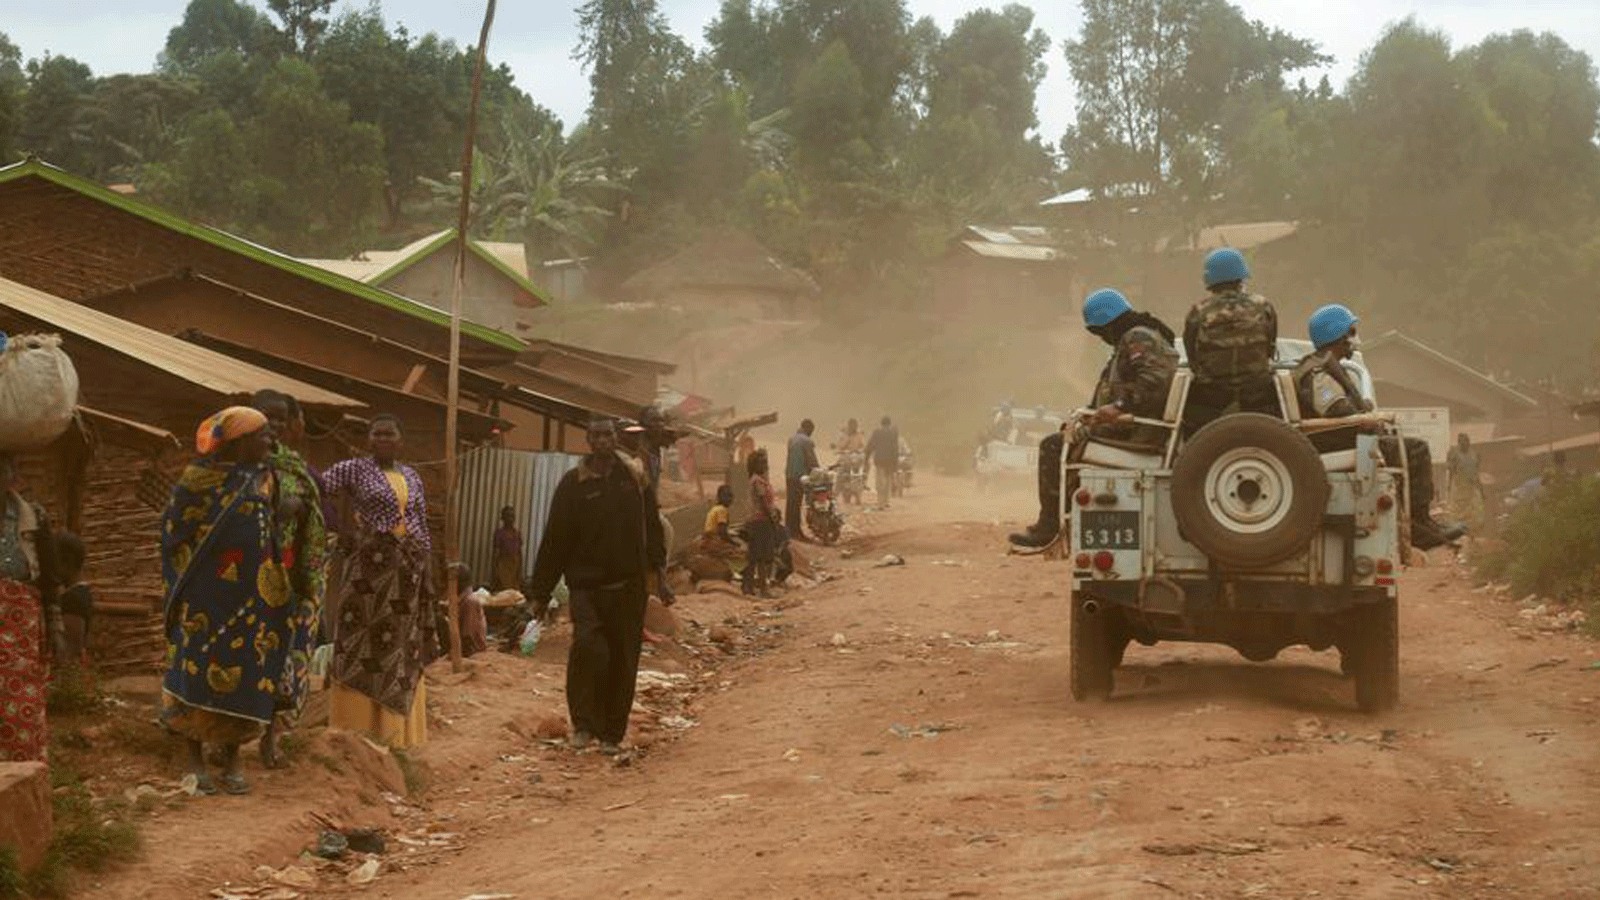 جنود مغاربة من بعثة الأمم المتحدة في جمهورية الكونغو الديمقراطية (مونوسكو)، أثناء قيامهم بدوريات في إقليم دجوغو الذي مزقته أعمال العنف، بإقليم إيتوري، شرق جمهورية الكونغو الديمقراطية.في 13 آذار/مارس 2020